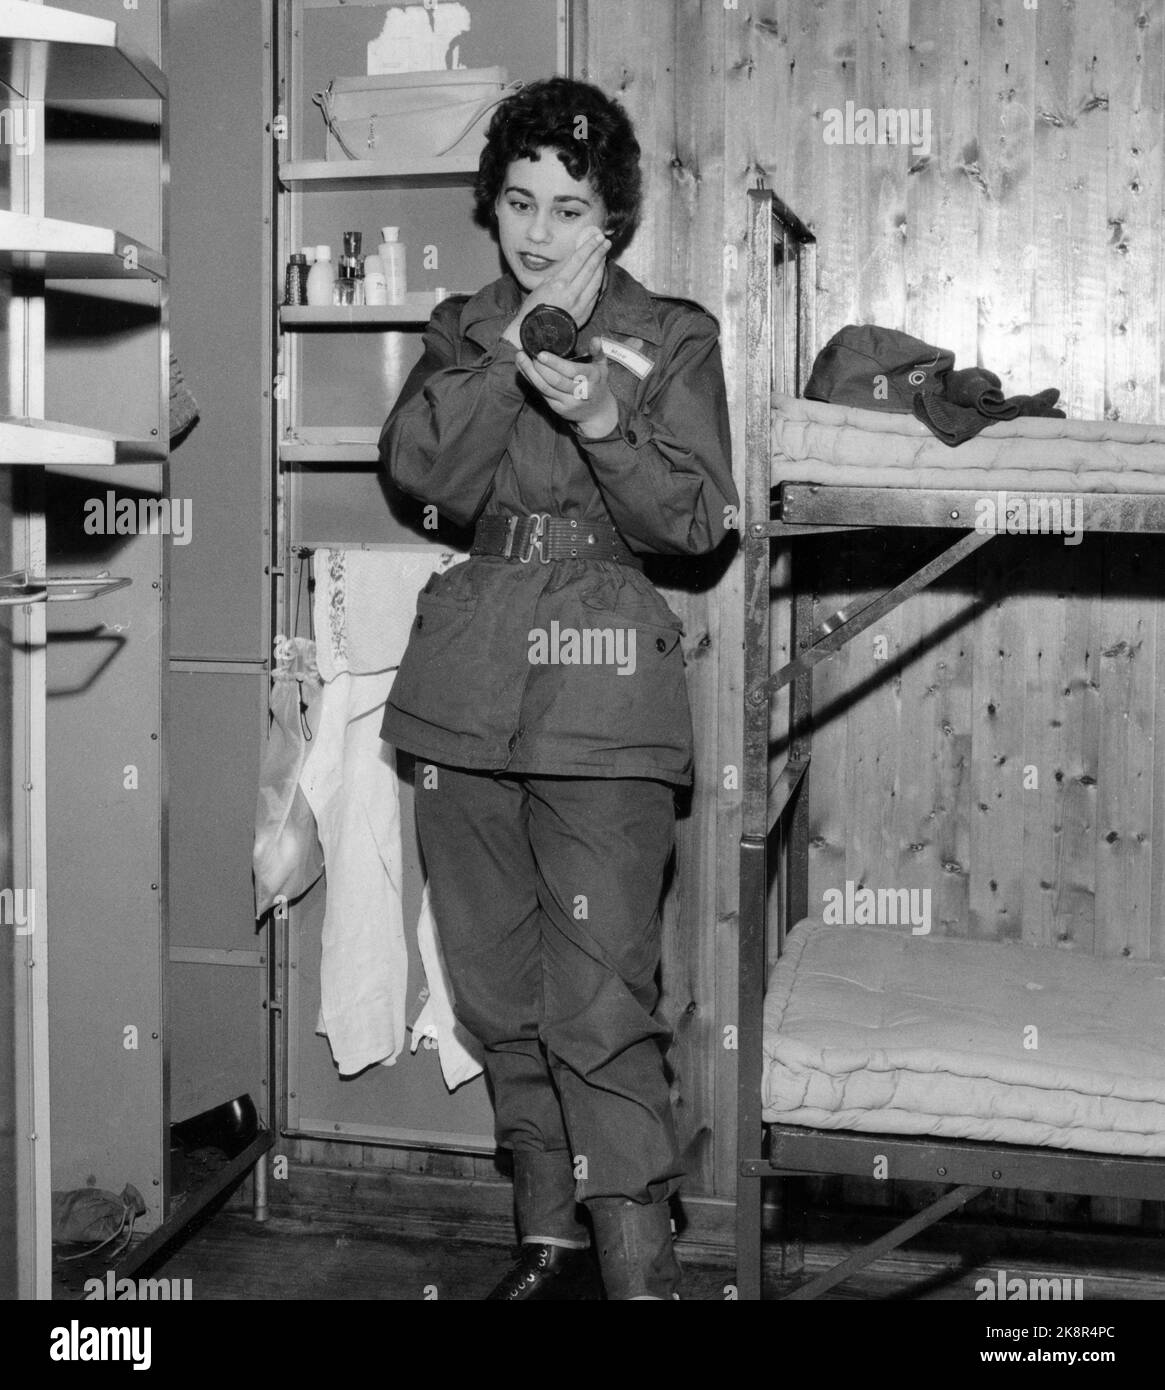 Lahaugmoen 195912. Elle se tente comme un soldat à Lahaugmoen à Oslo. Le maquillage peut être utilisé, mais il devrait être discret - un peu de poudre et de rouge à lèvres. Pas d'ombres à paupières bleues ou similaires. Se tient à côté des lits superposés. Photo: Ivar Aaserud / courant / NTB Banque D'Images